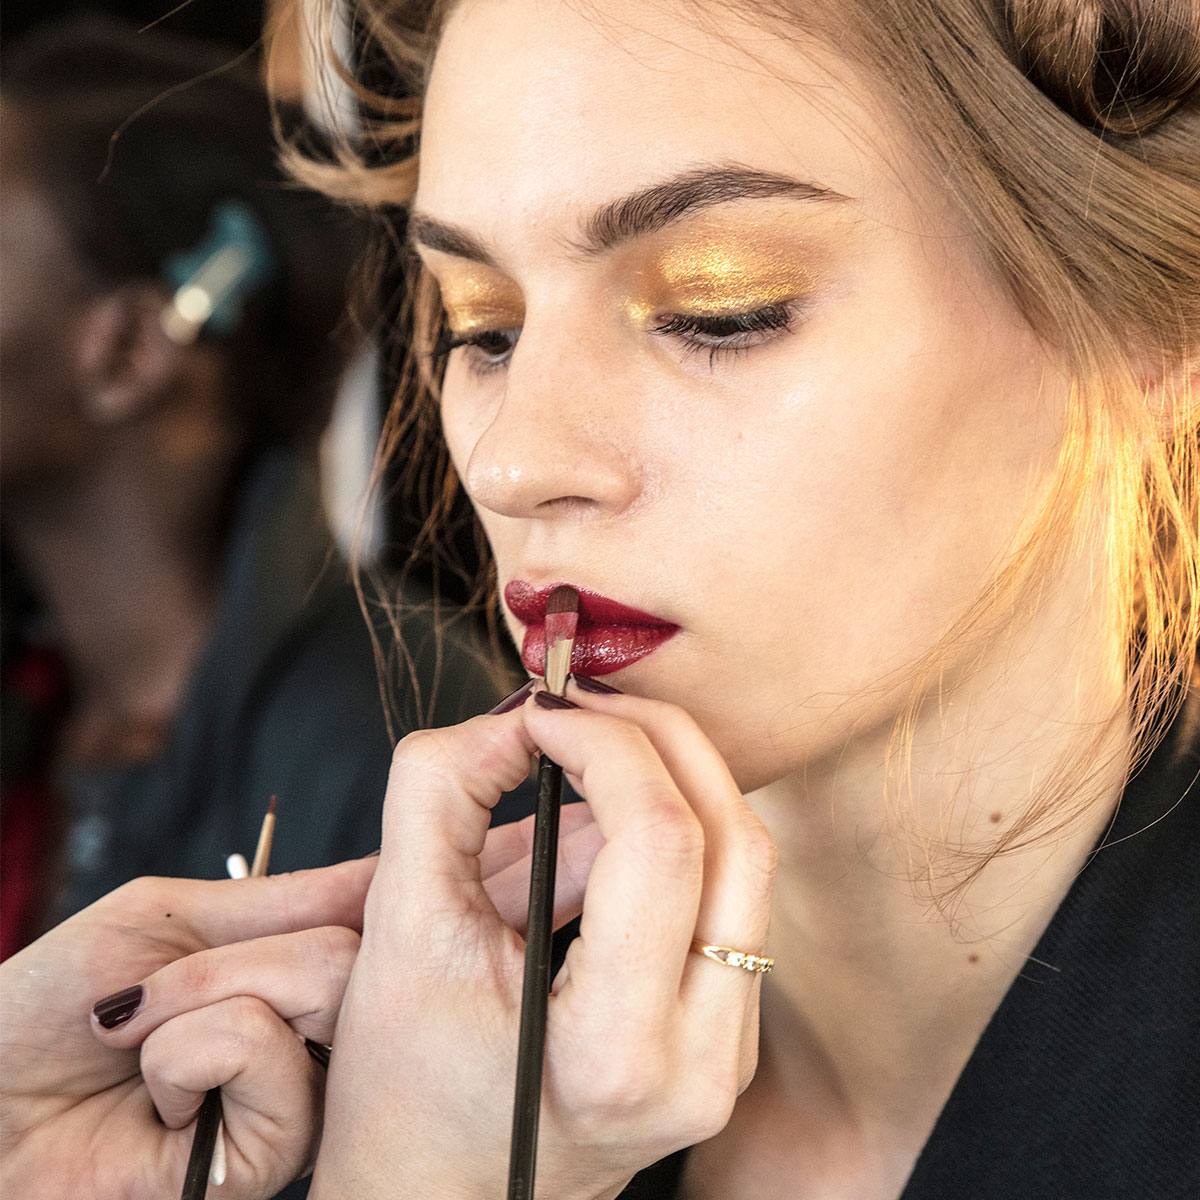 makeup-artist-applying-lipstick